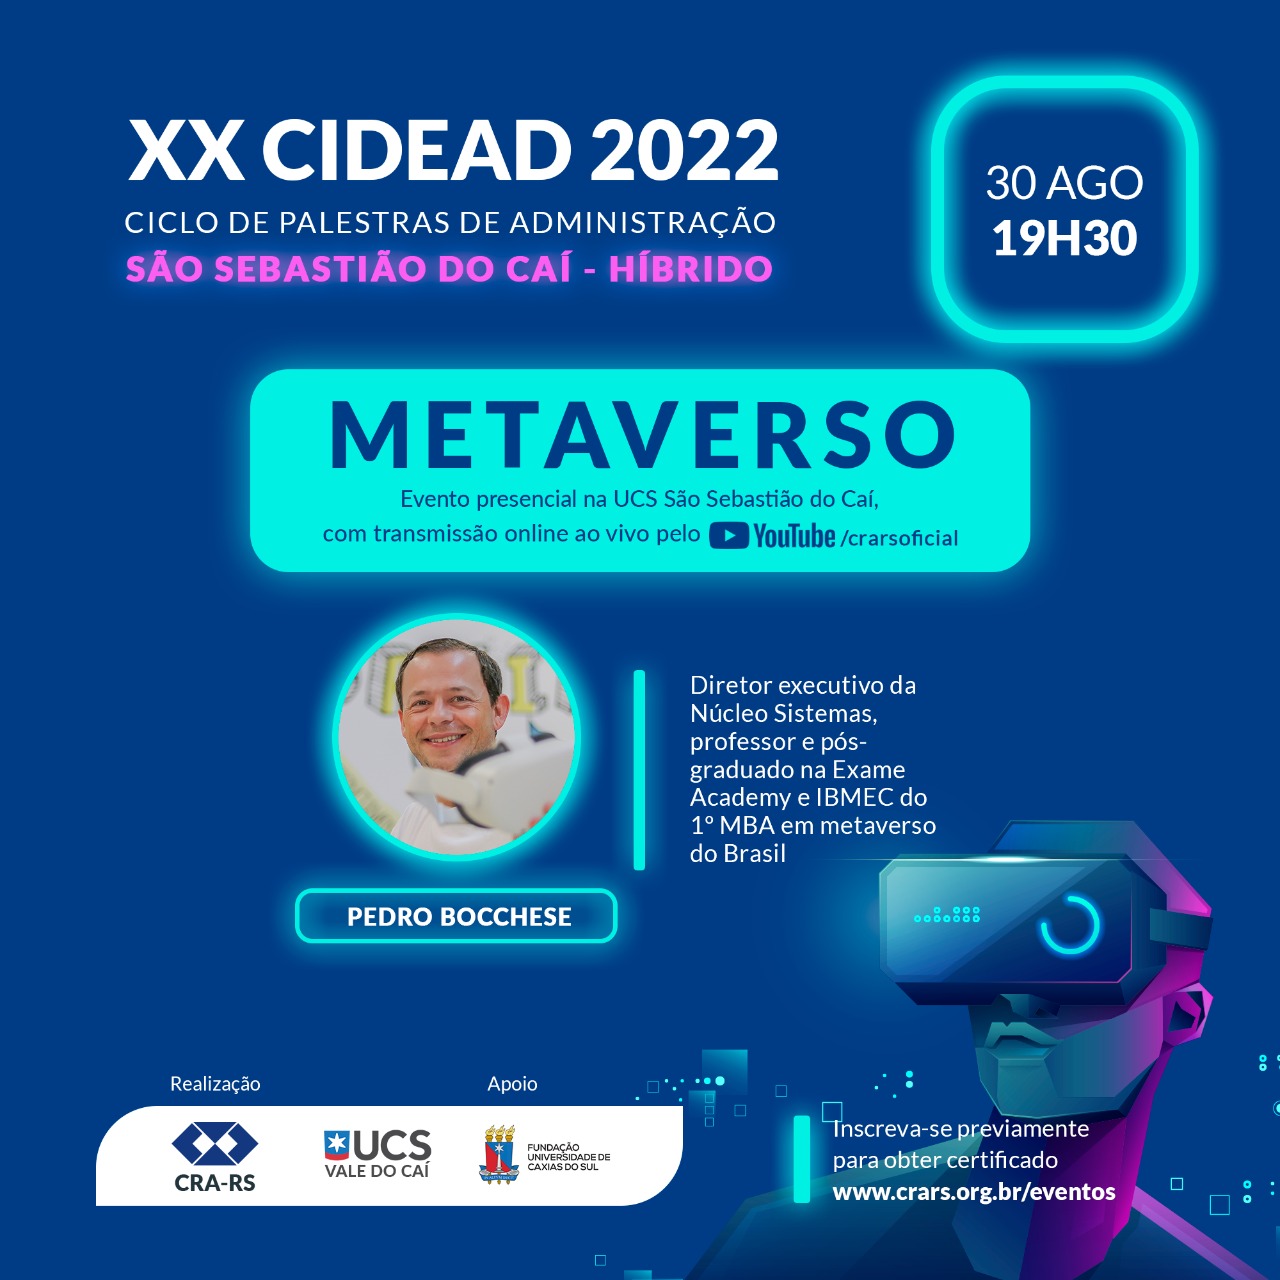 XX Cidead 2022 - Metaverso em São Sebastião do Cai